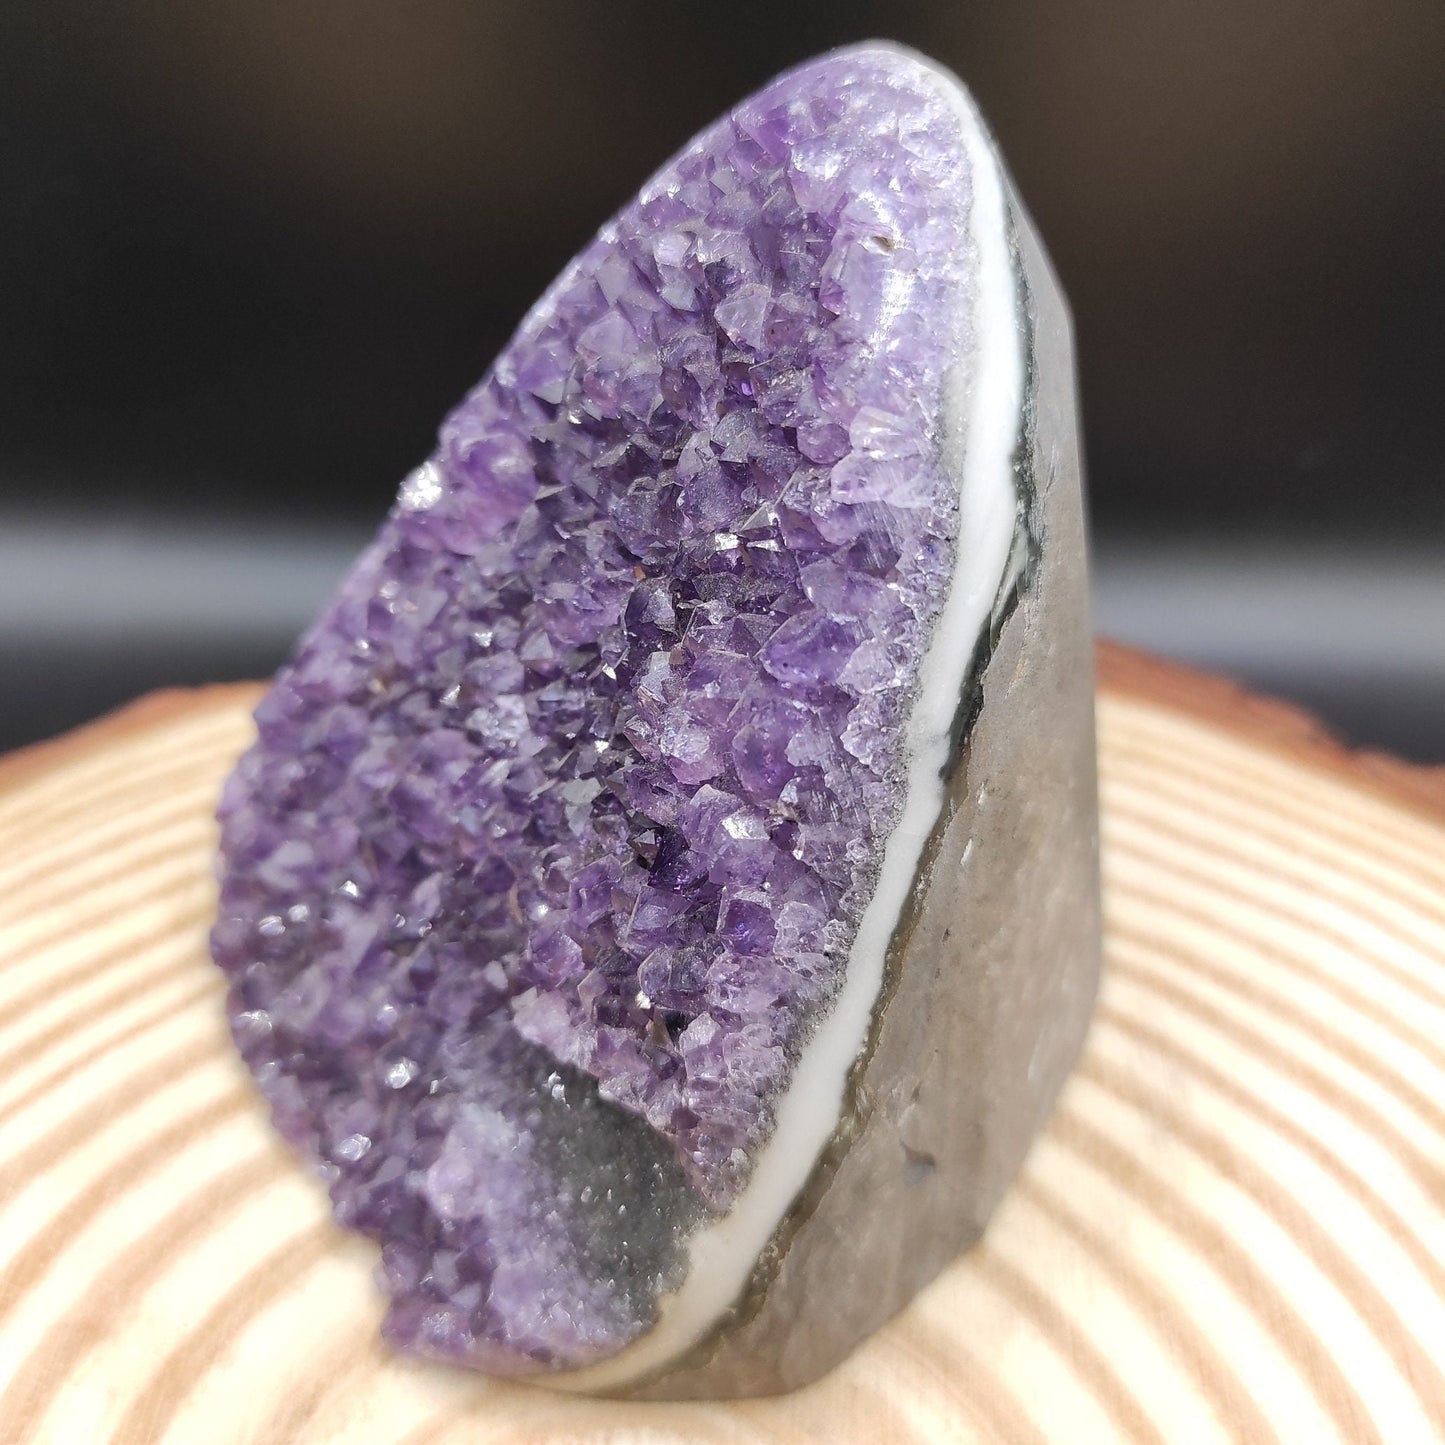 435g Amethyst Geode Cluster Purple Amethyst from South Brazil Amethyst Gemstone Raw Amethyst Rough Amethyst Desk Crystal Natural Crystals